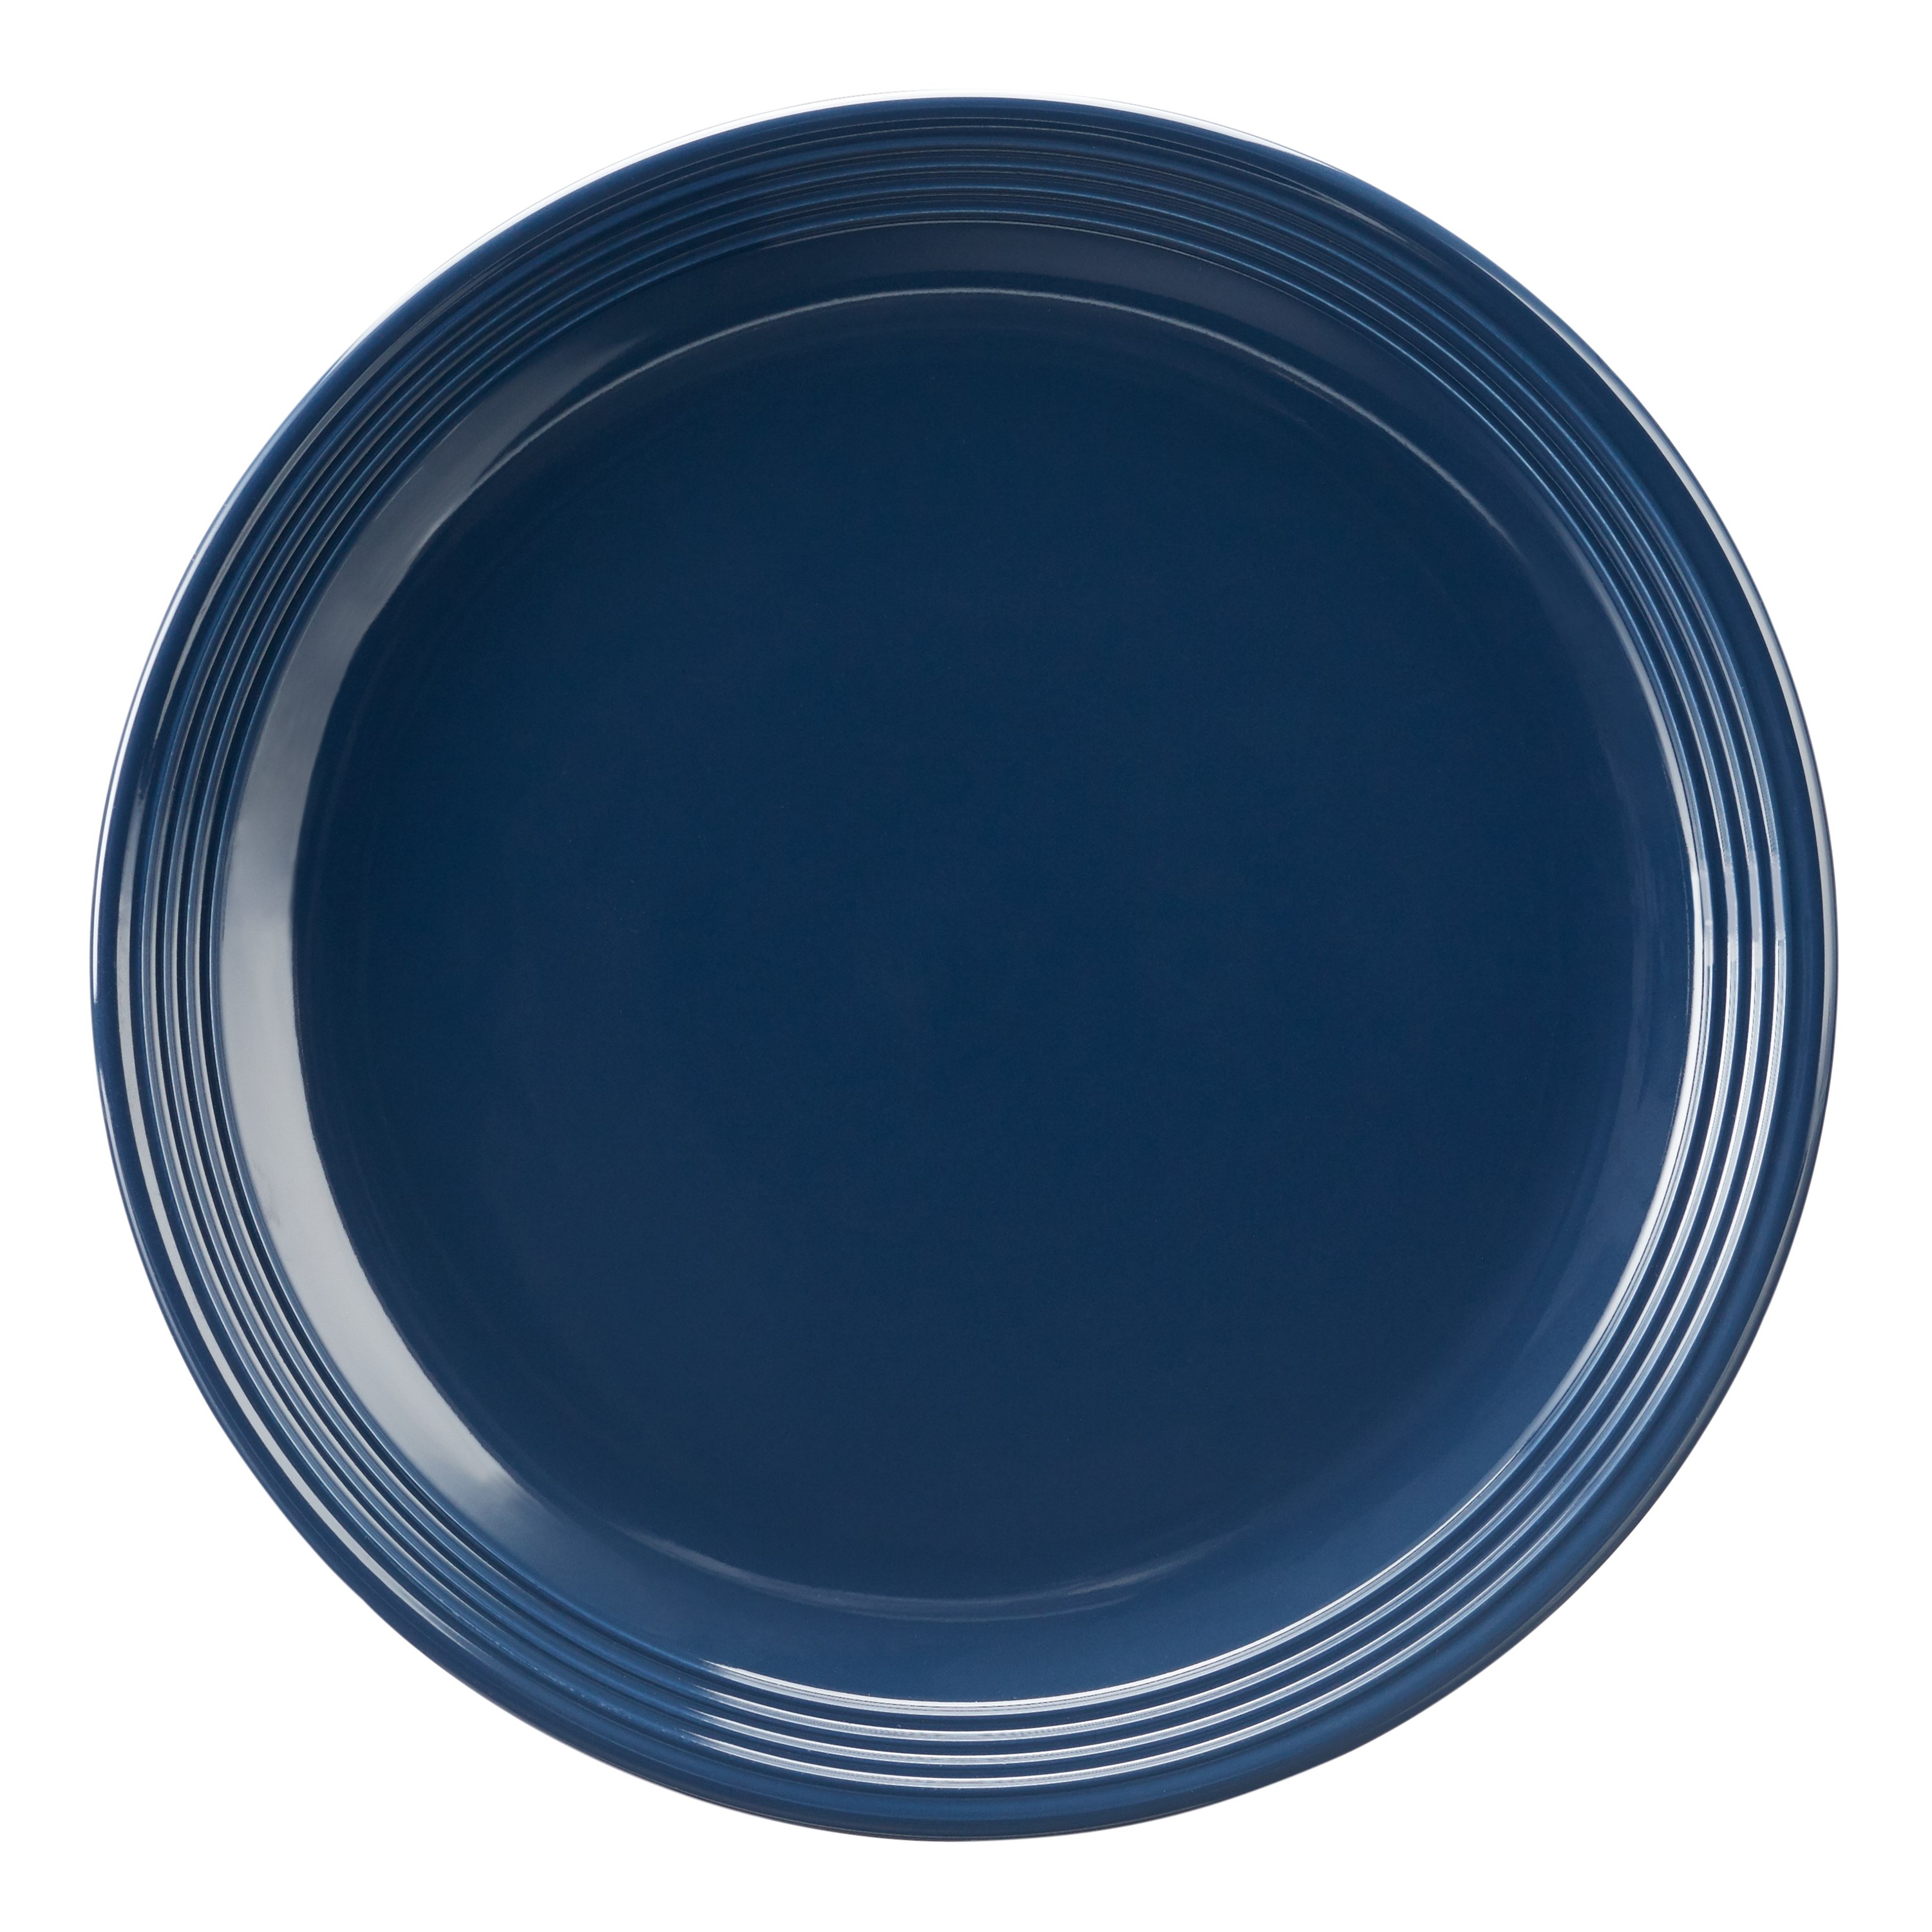 Mainstays Chiara 16-Piece Stoneware Navy Dinnerware Set - image 3 of 9